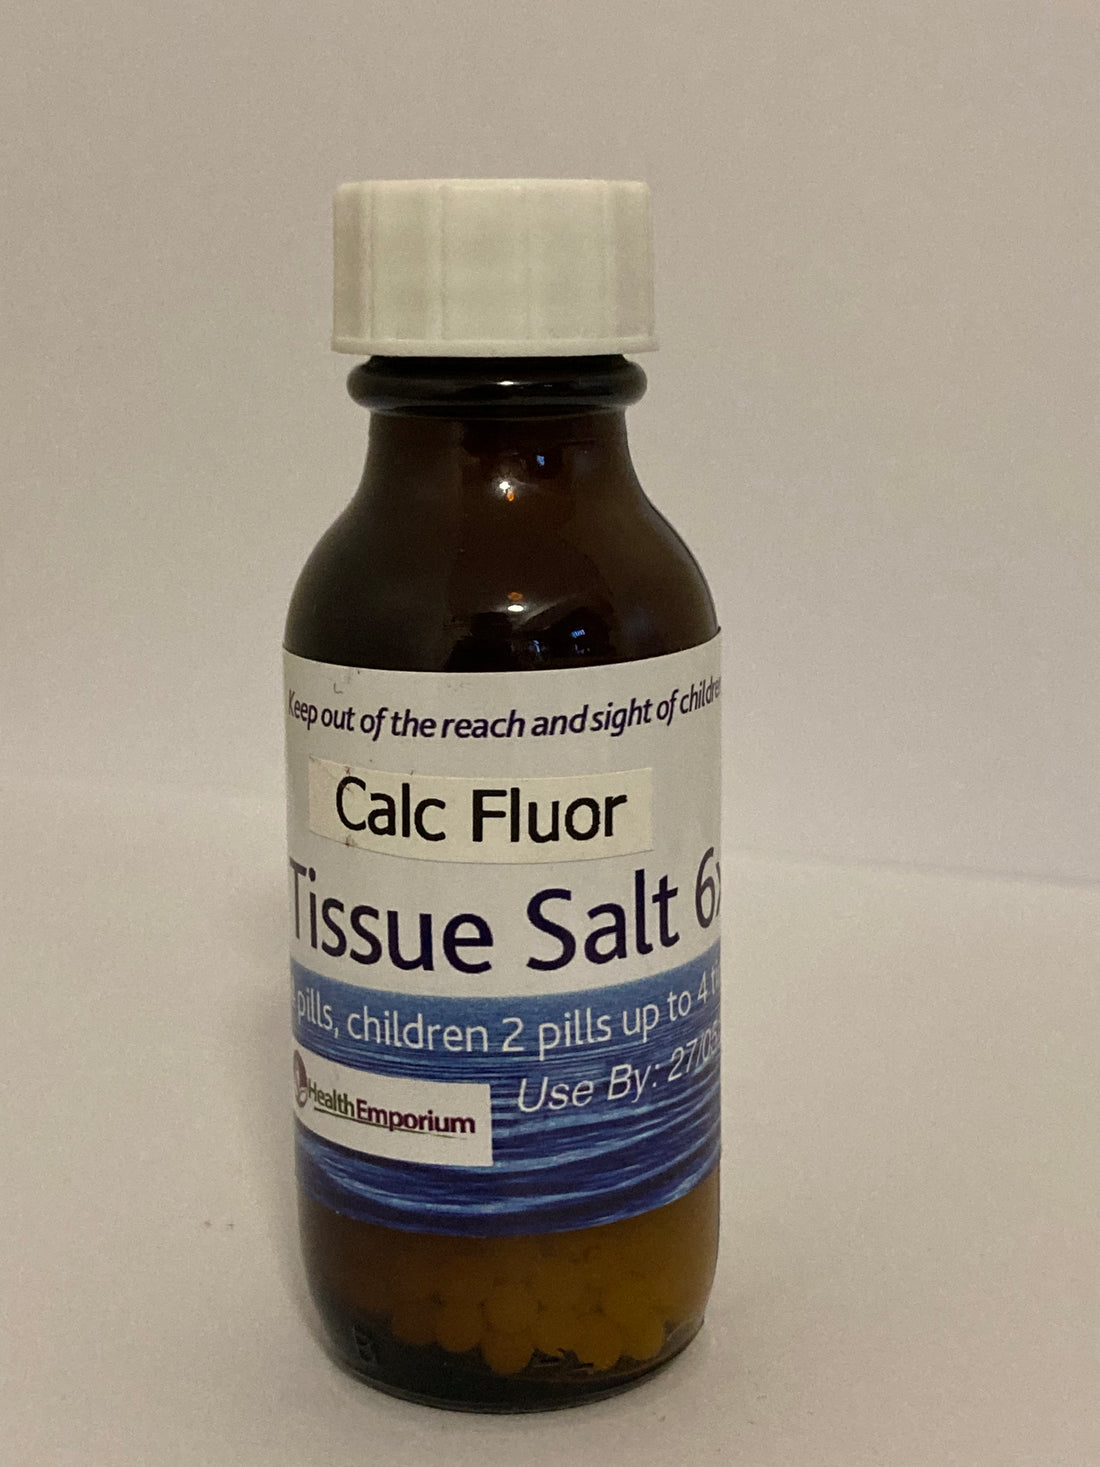 Calc Fluor No 1 Tissue Salt